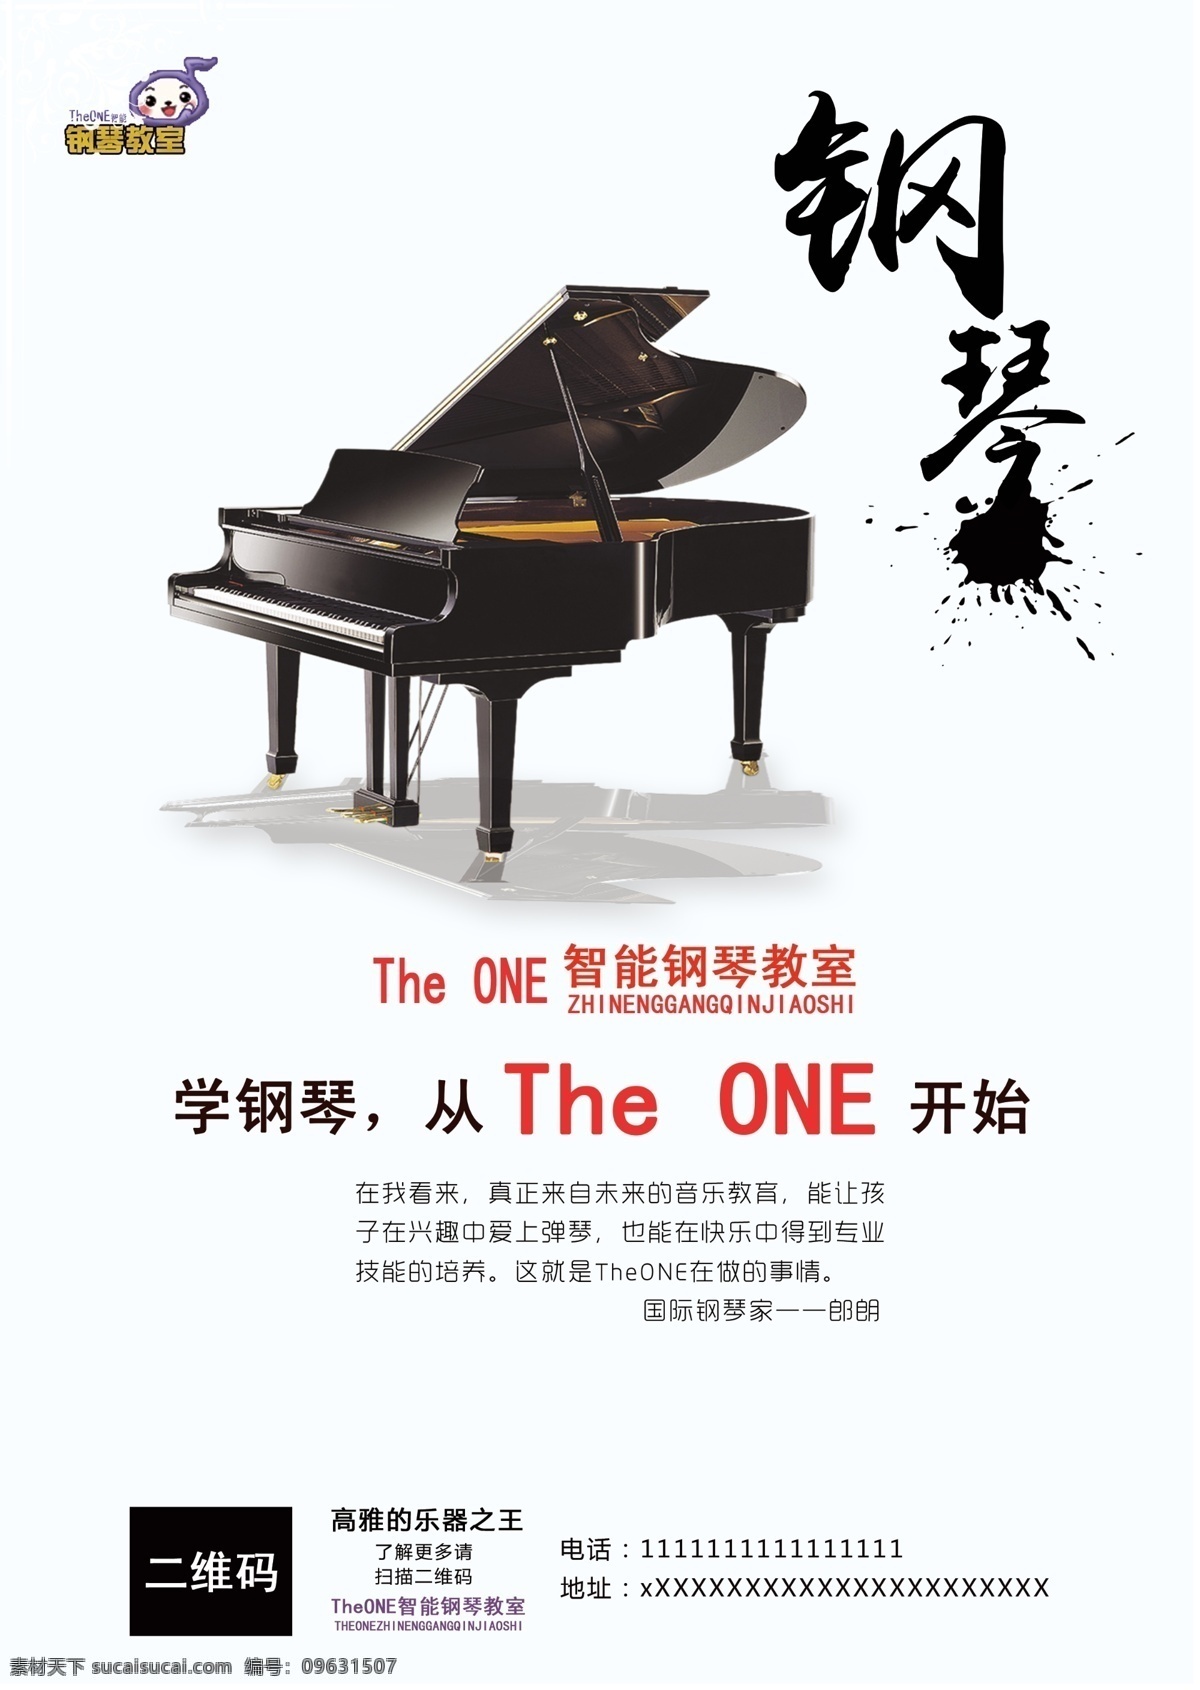 钢琴海报 钢琴招生 钢琴展板 钢琴学习 钢琴培训海报 钢琴学校 海报